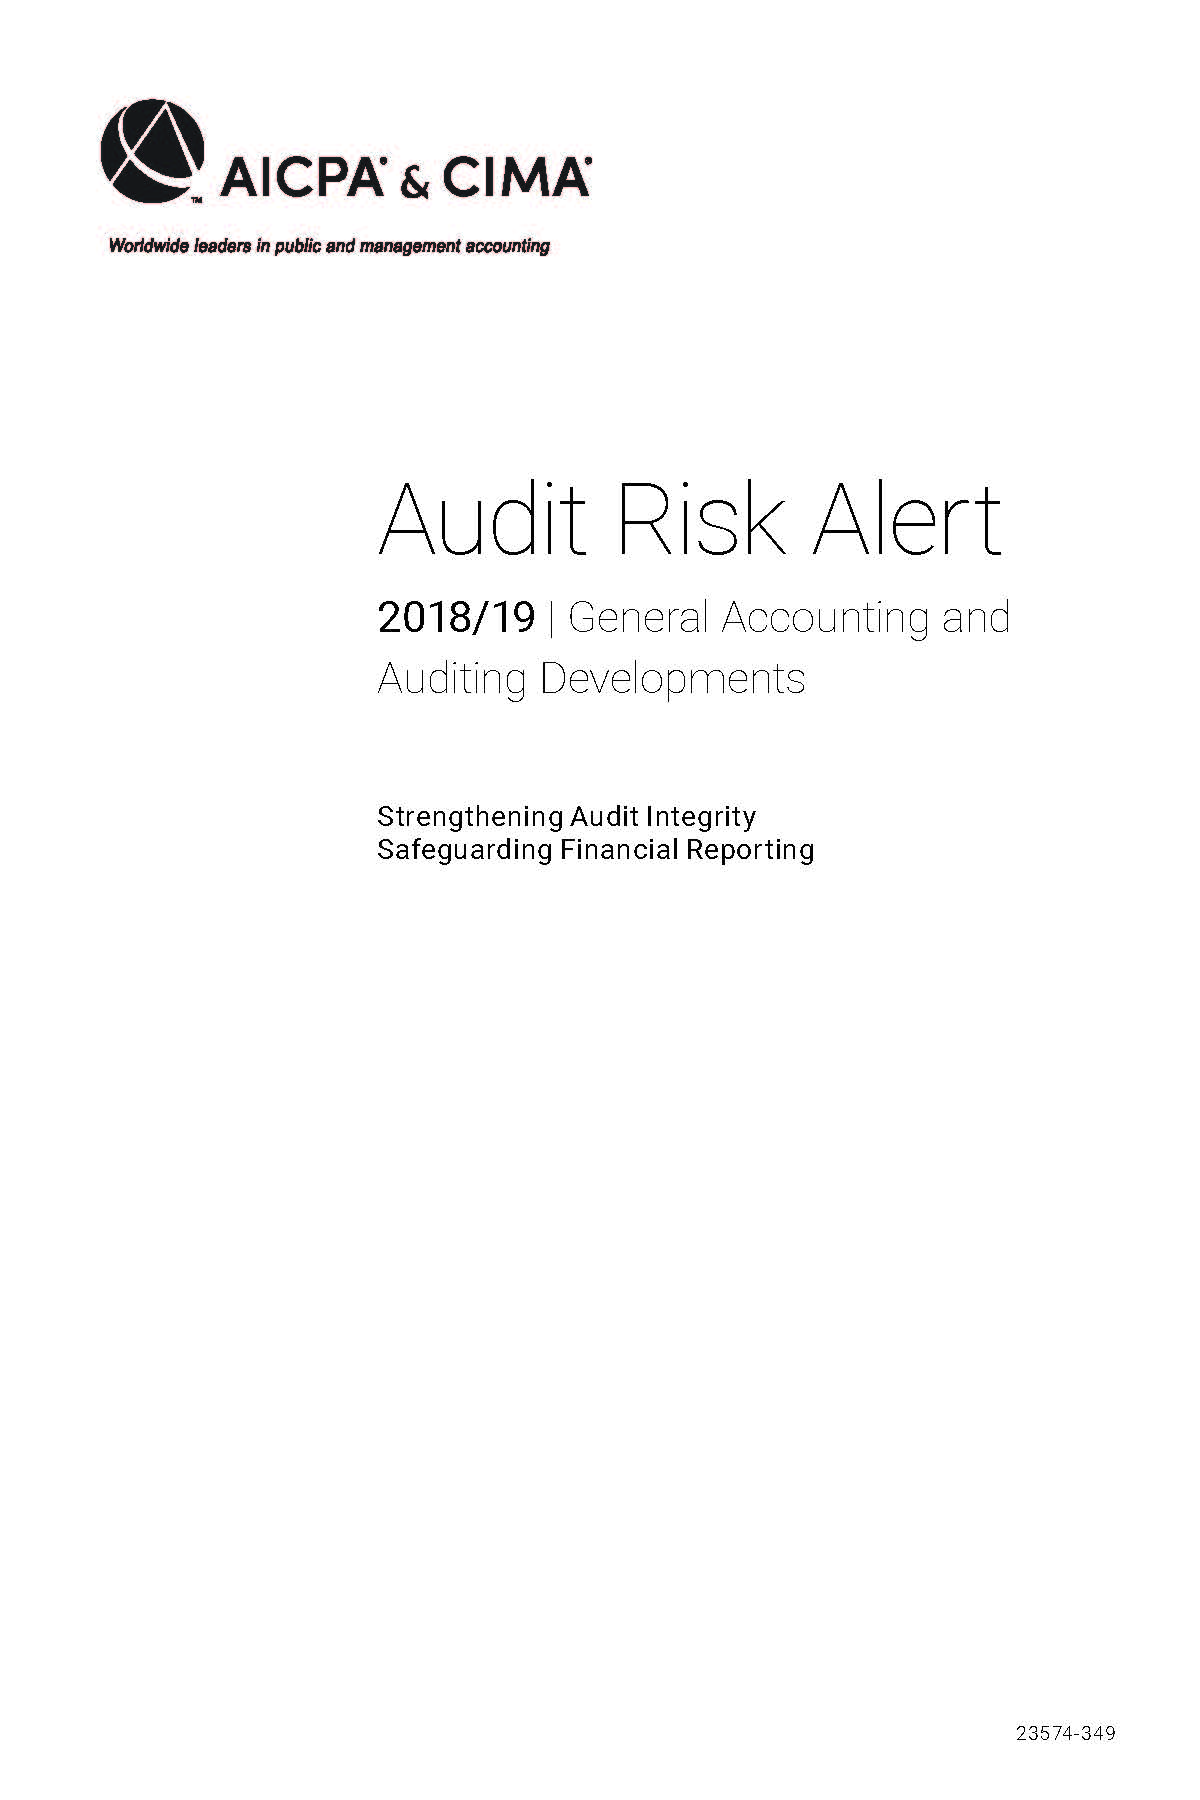 页面提取自－Audit Risk Alert General Accounting and Auditing Developments 201819.png